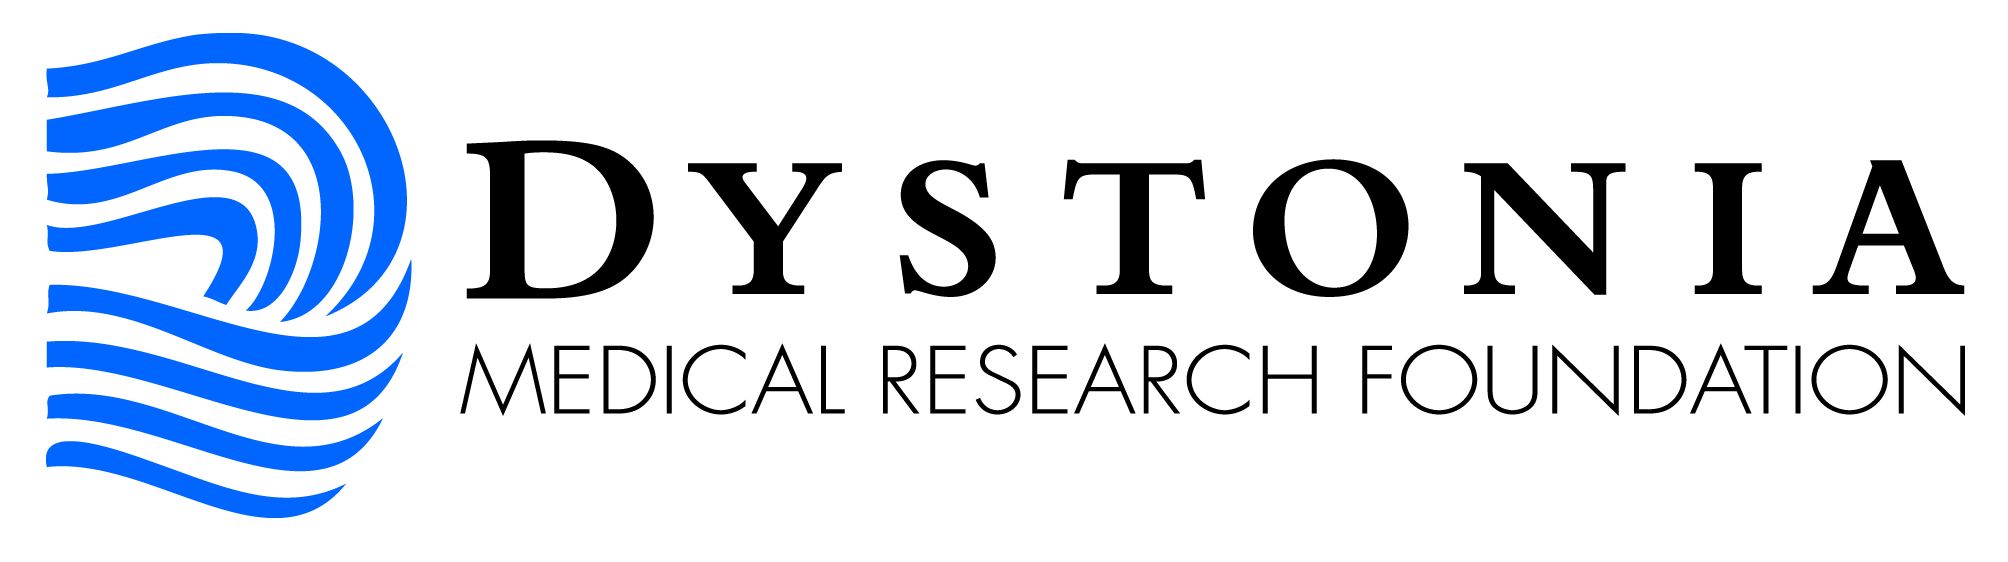 dystonia Logo